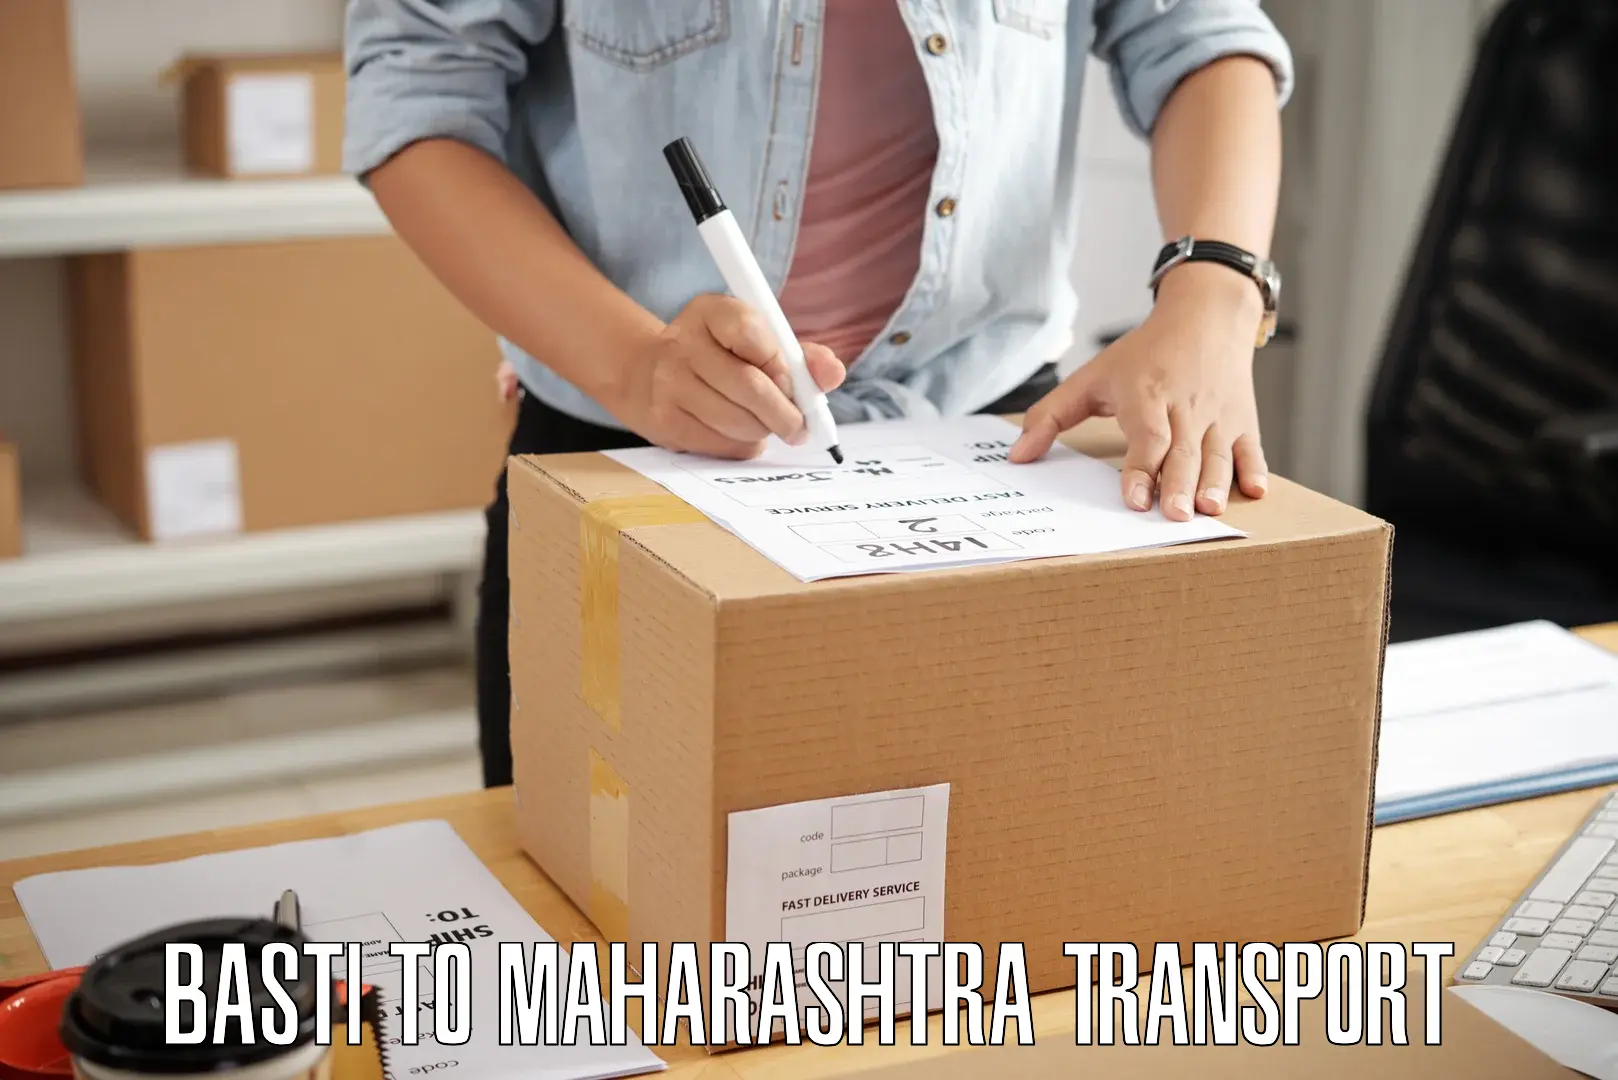 Shipping services Basti to Khandala Pune